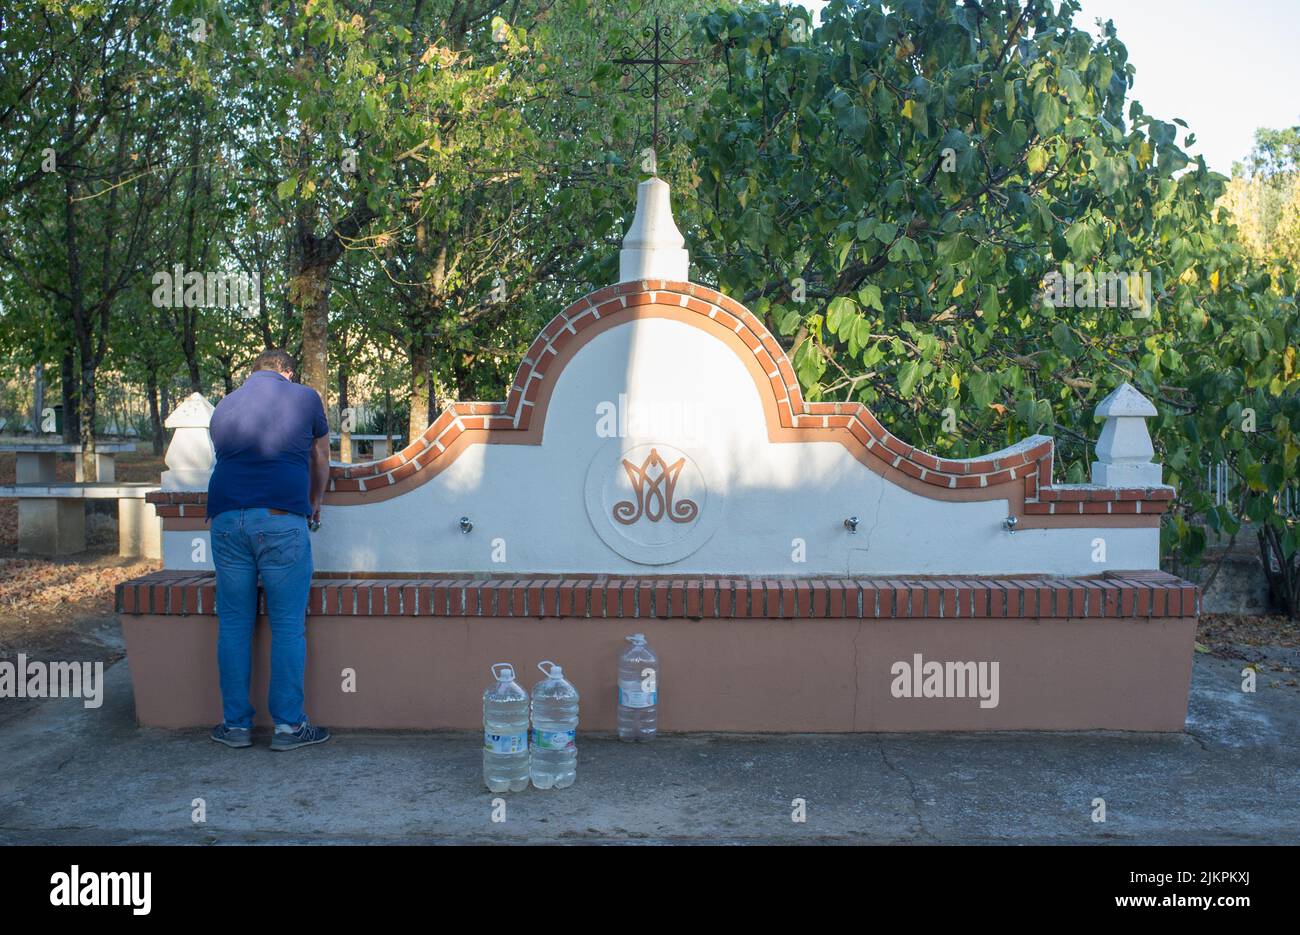 La Codosera, España - 21th de agosto de 2021: Santuario de Nuestra Señora de Chandavila. Hombre local llenando botellas en la fuente santa Foto de stock